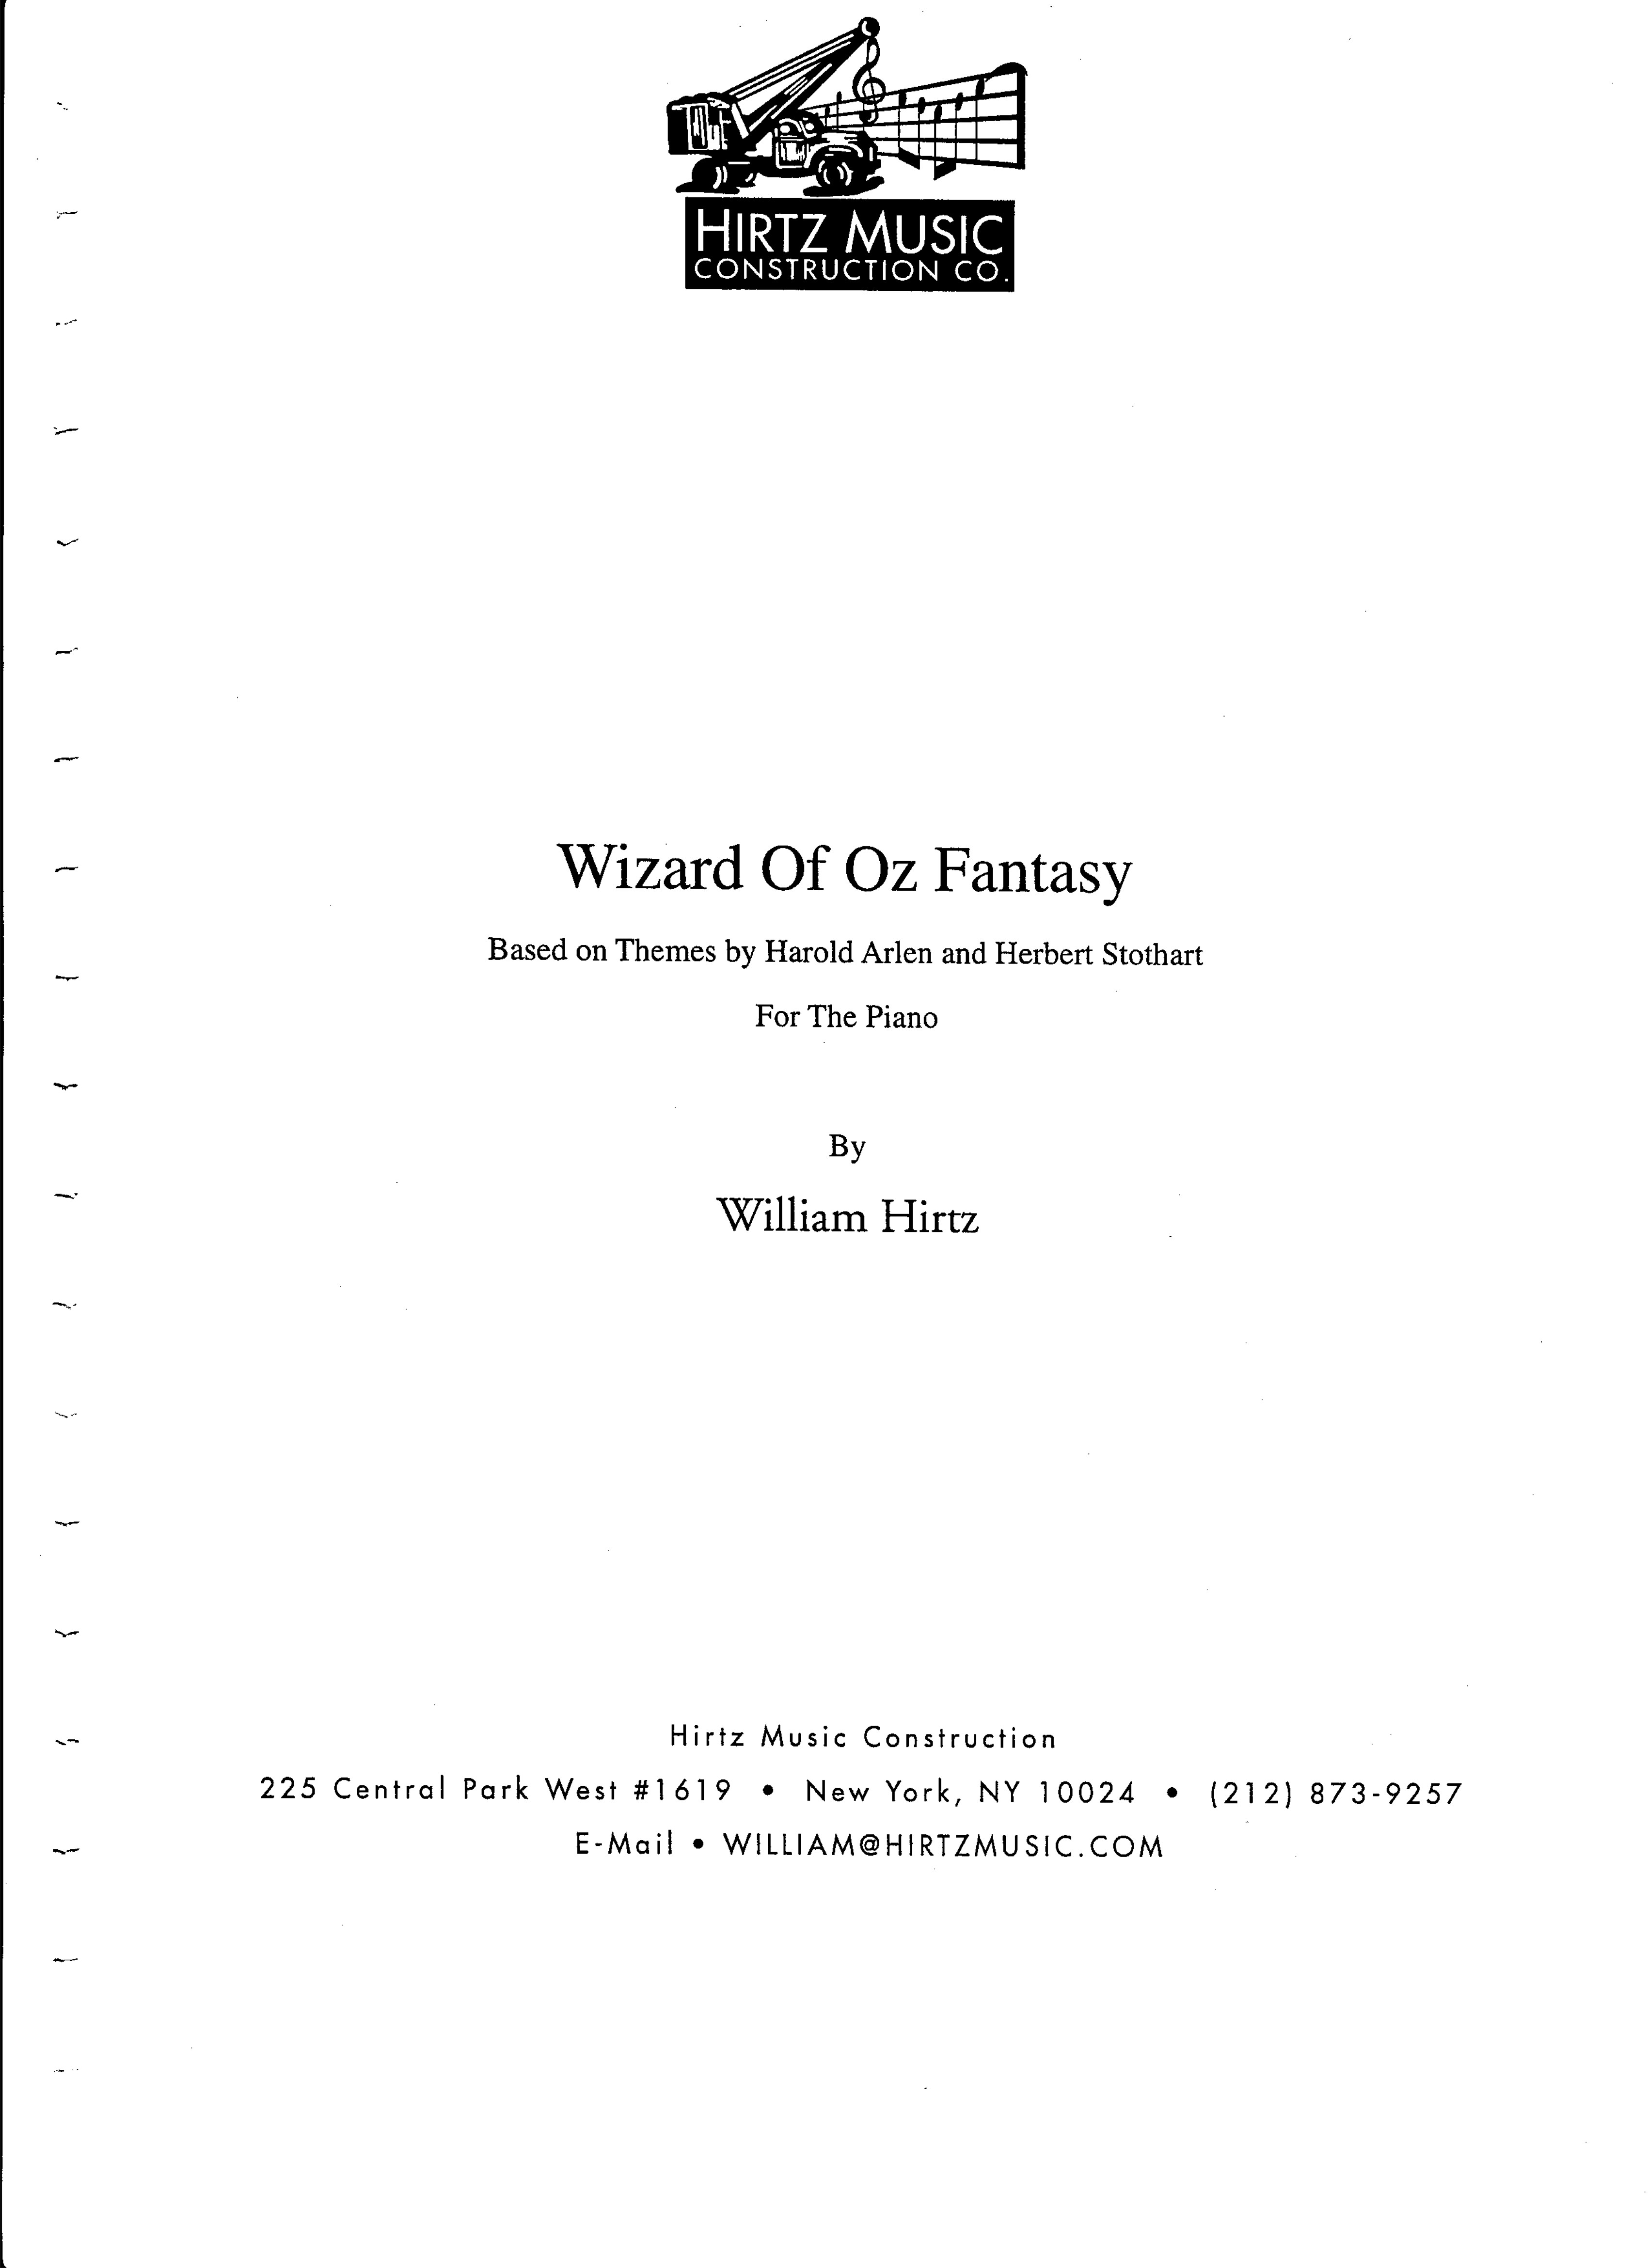 Wizard of Oz fantasy